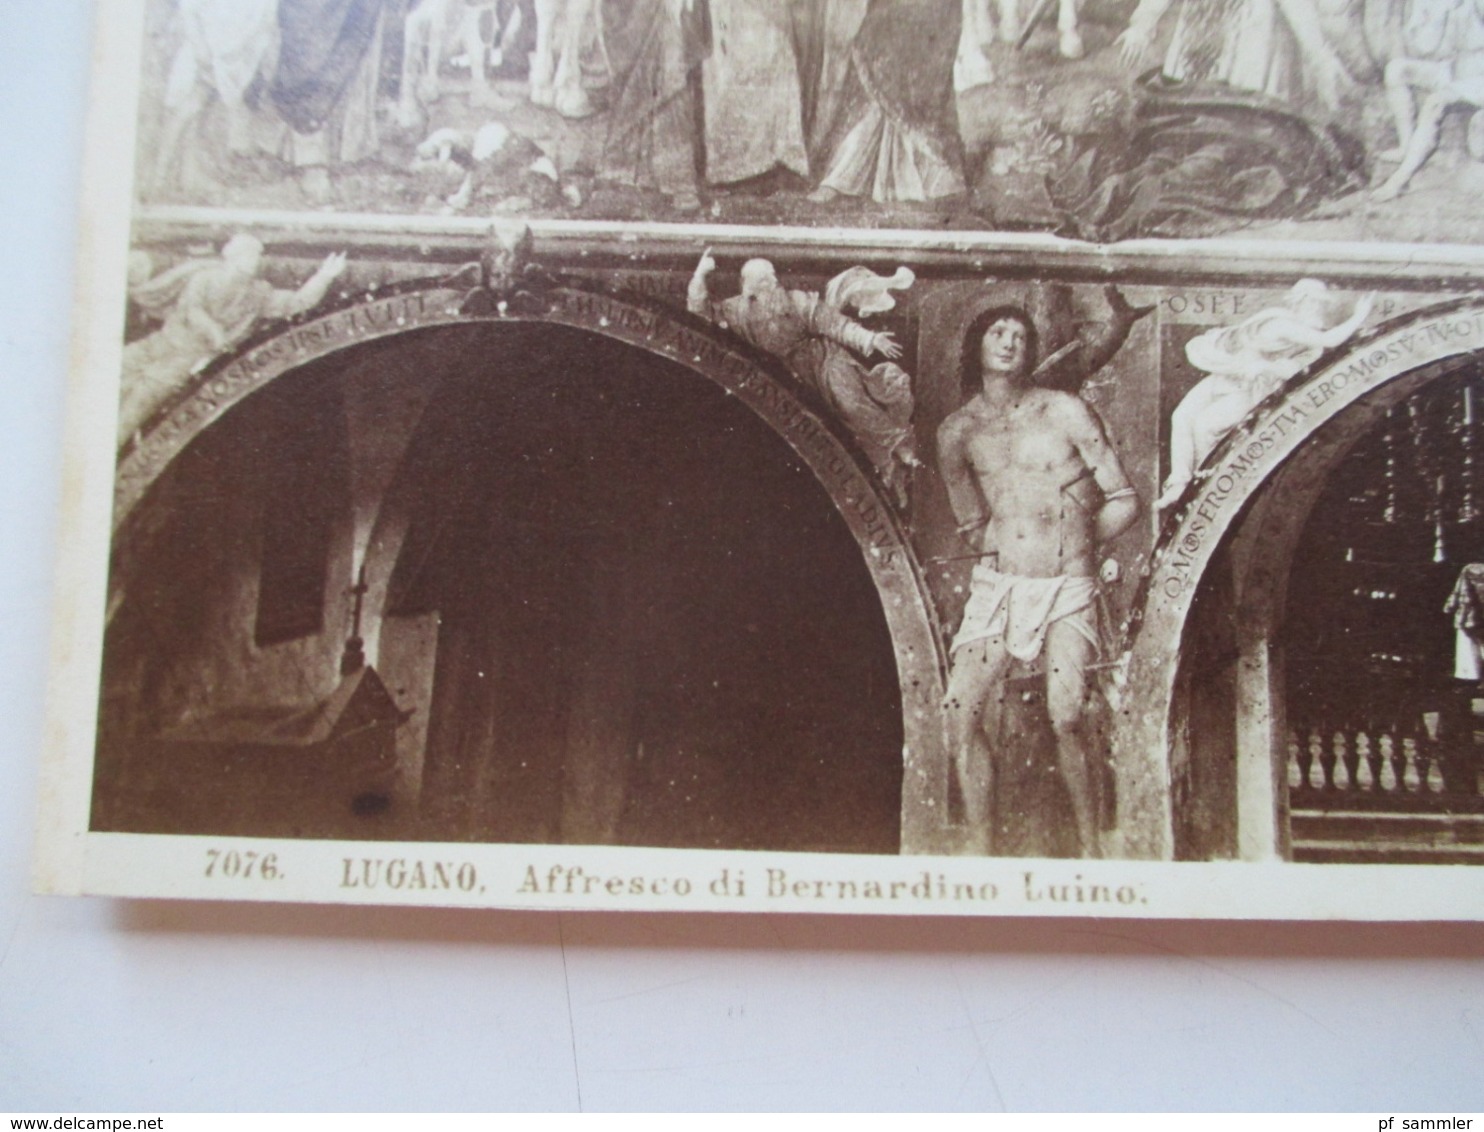 Altes Großes Foto Ca. 1930er Jahre Eventuell älter?? Format 24.5x20,5cm Lugano Affresco Di Bernadine Luino - Orte